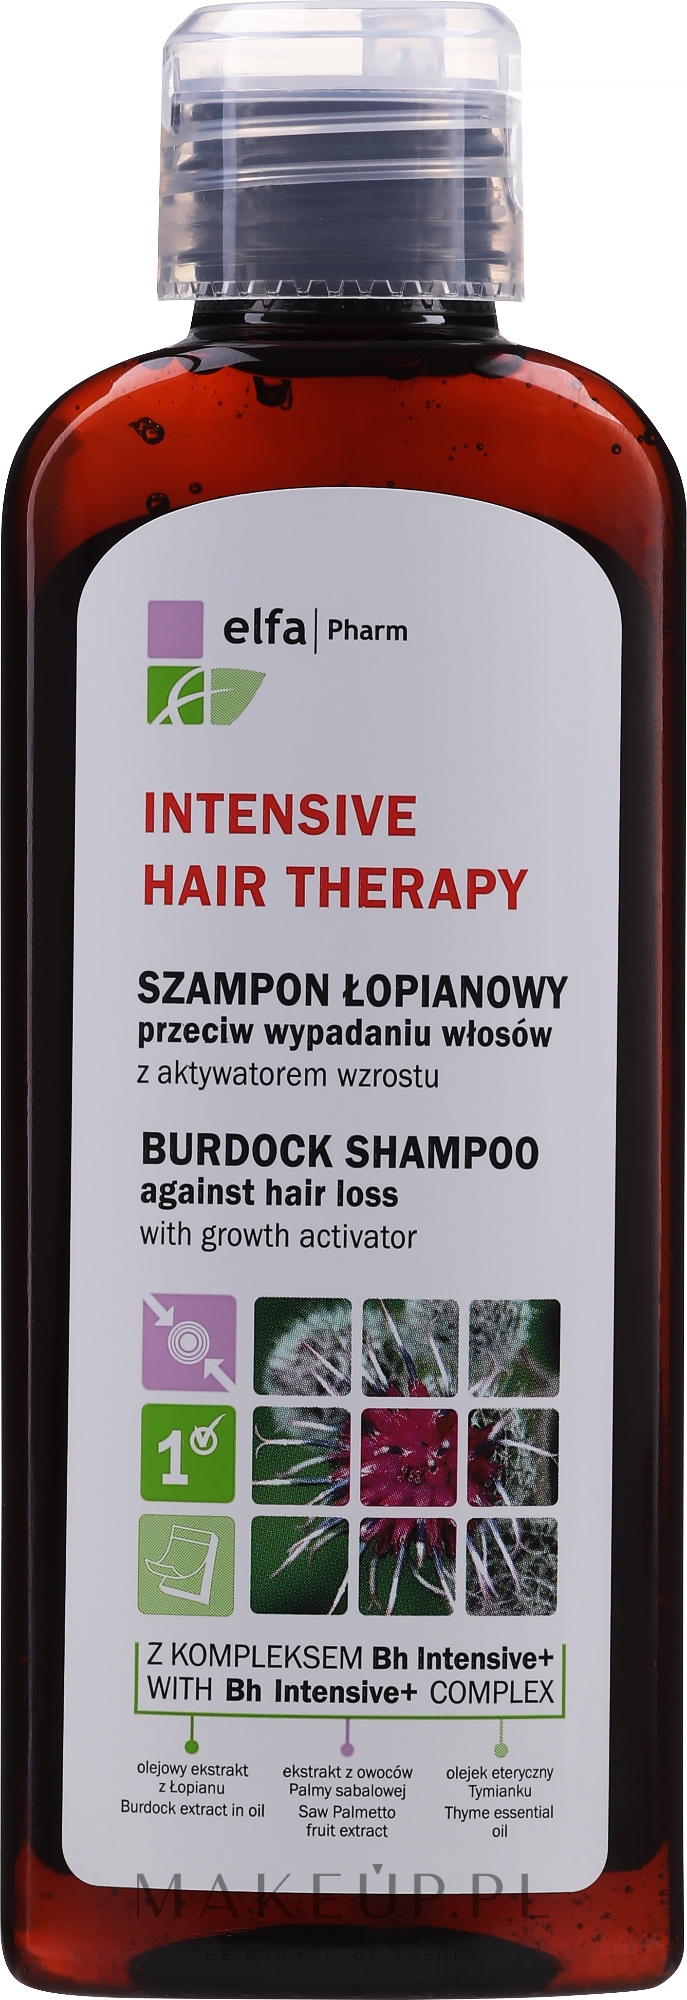 elfa pharm szampon łopianowy wypadanie włosów